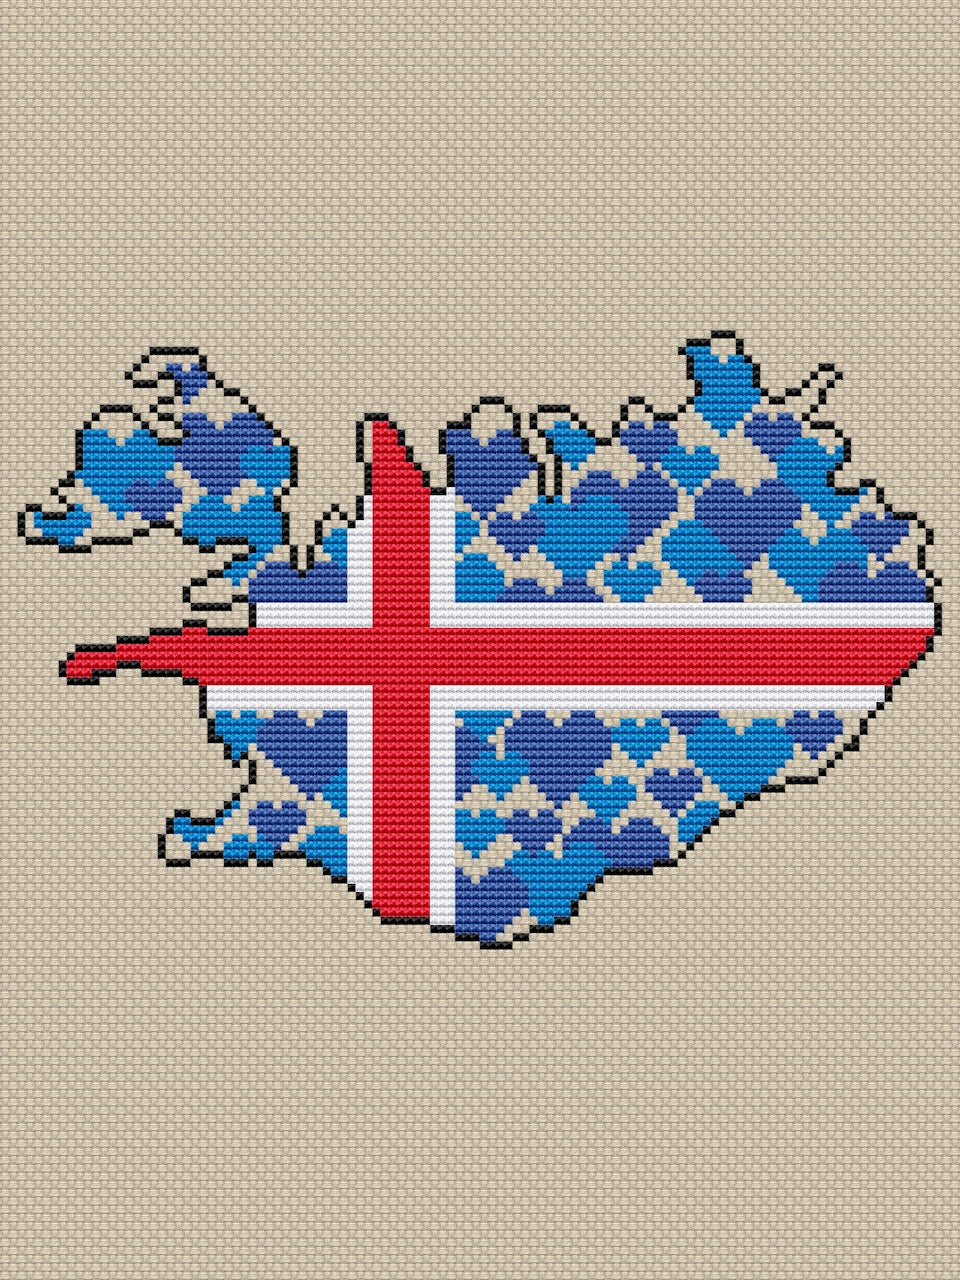 Iceland free cross stitch pattern